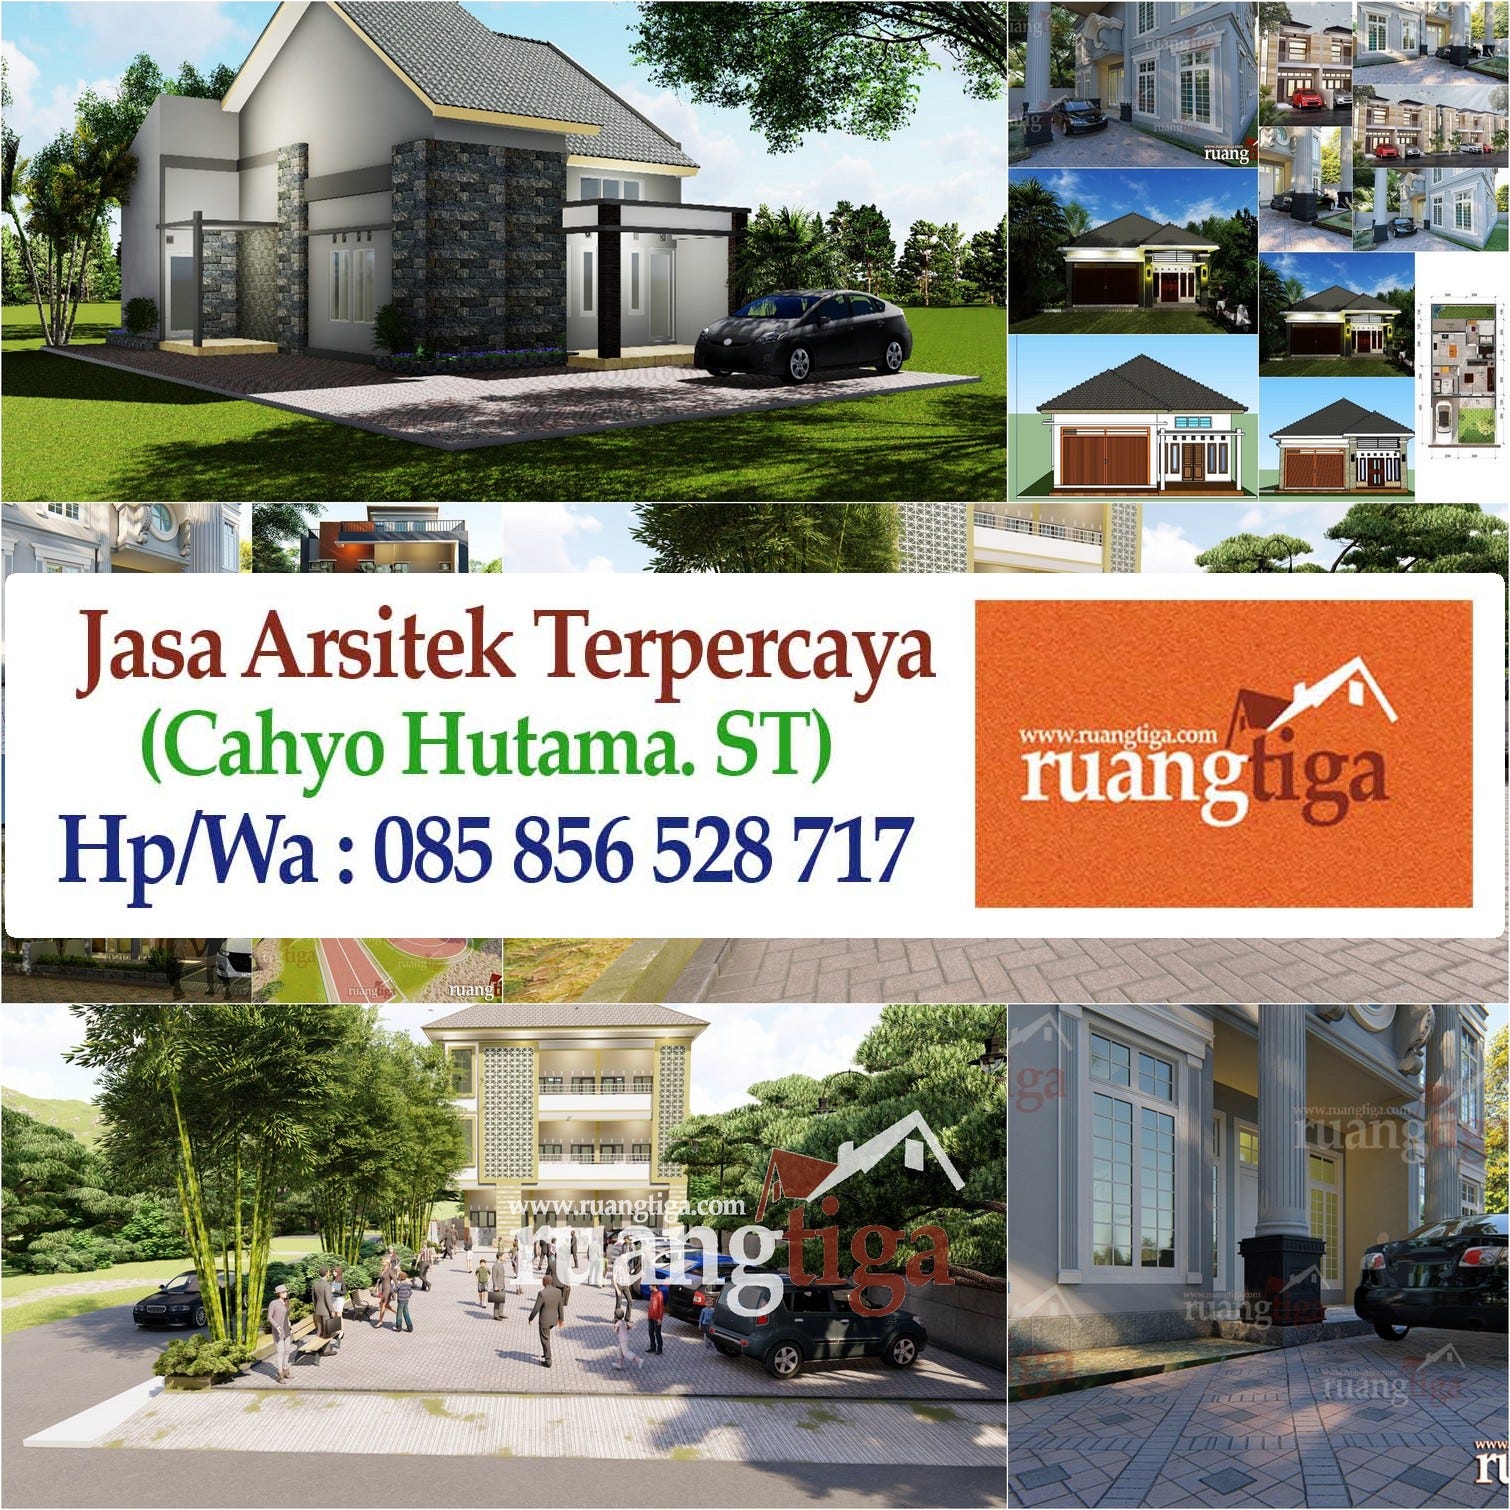 085856528717 Jasa Desain Rumah Jombang Jasa Desain Rumah